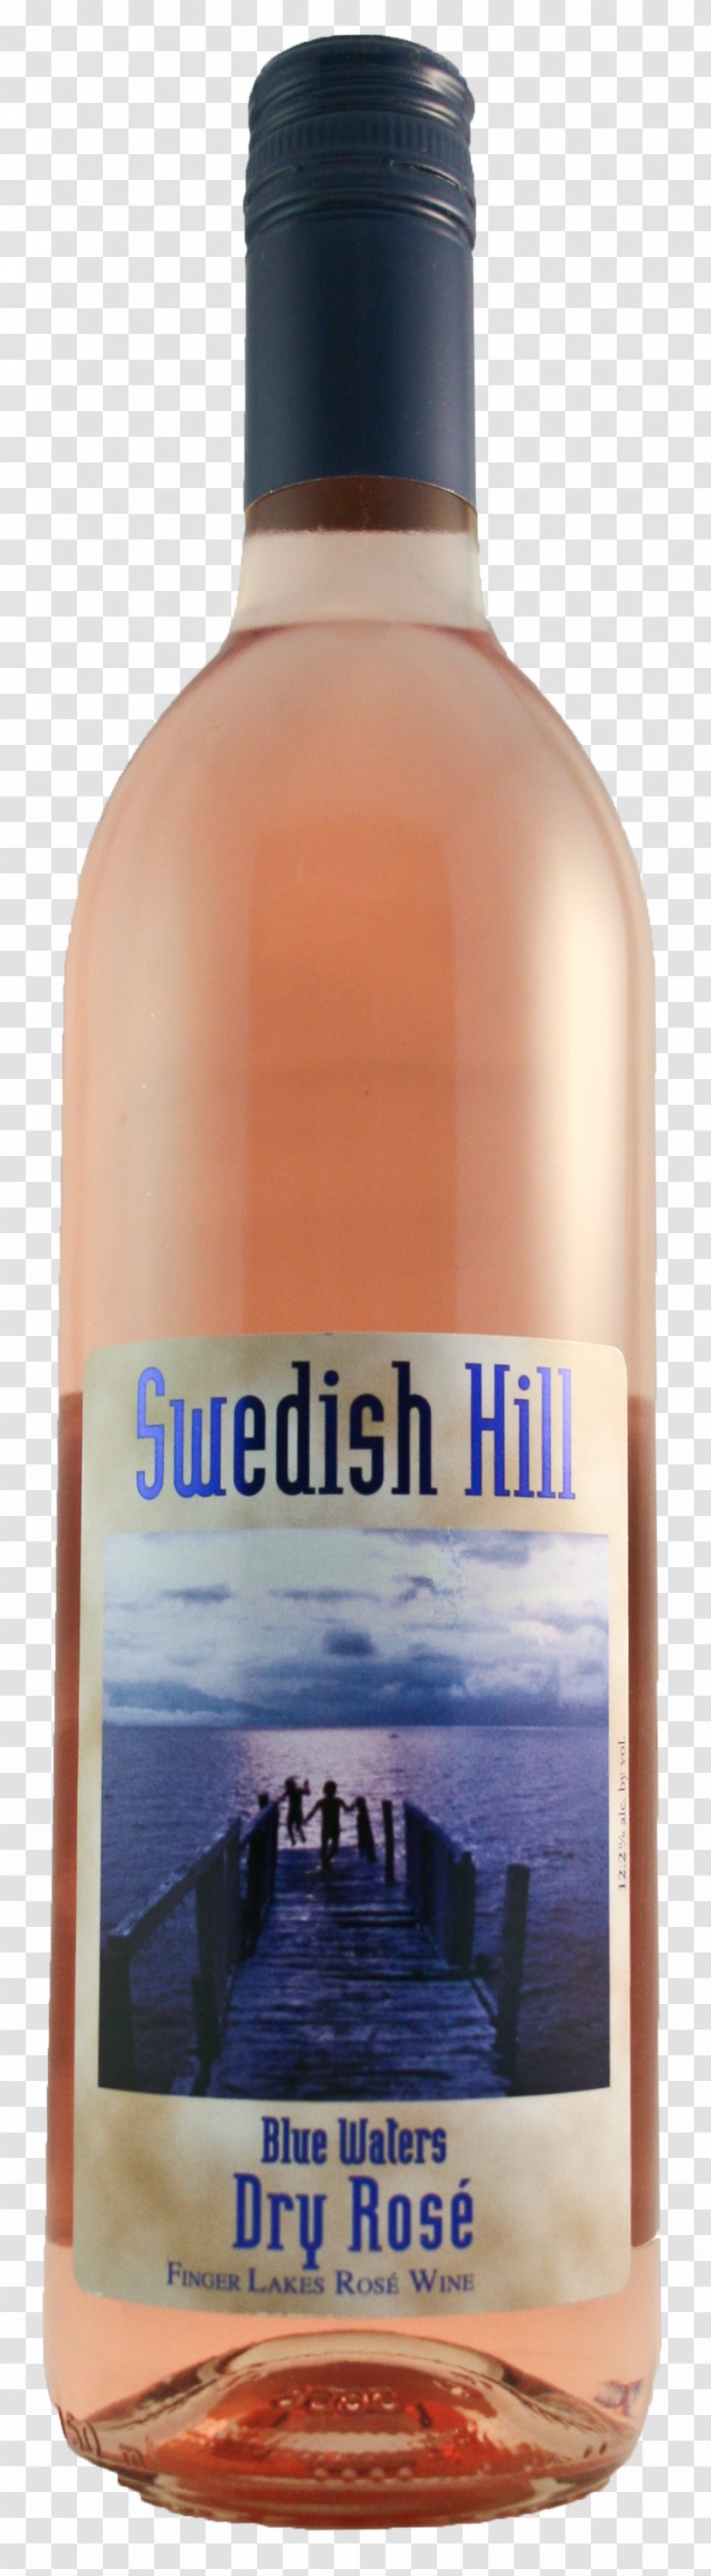 Liqueur Chardonnay Bottle - Distilled Beverage - Dry Rose Transparent PNG